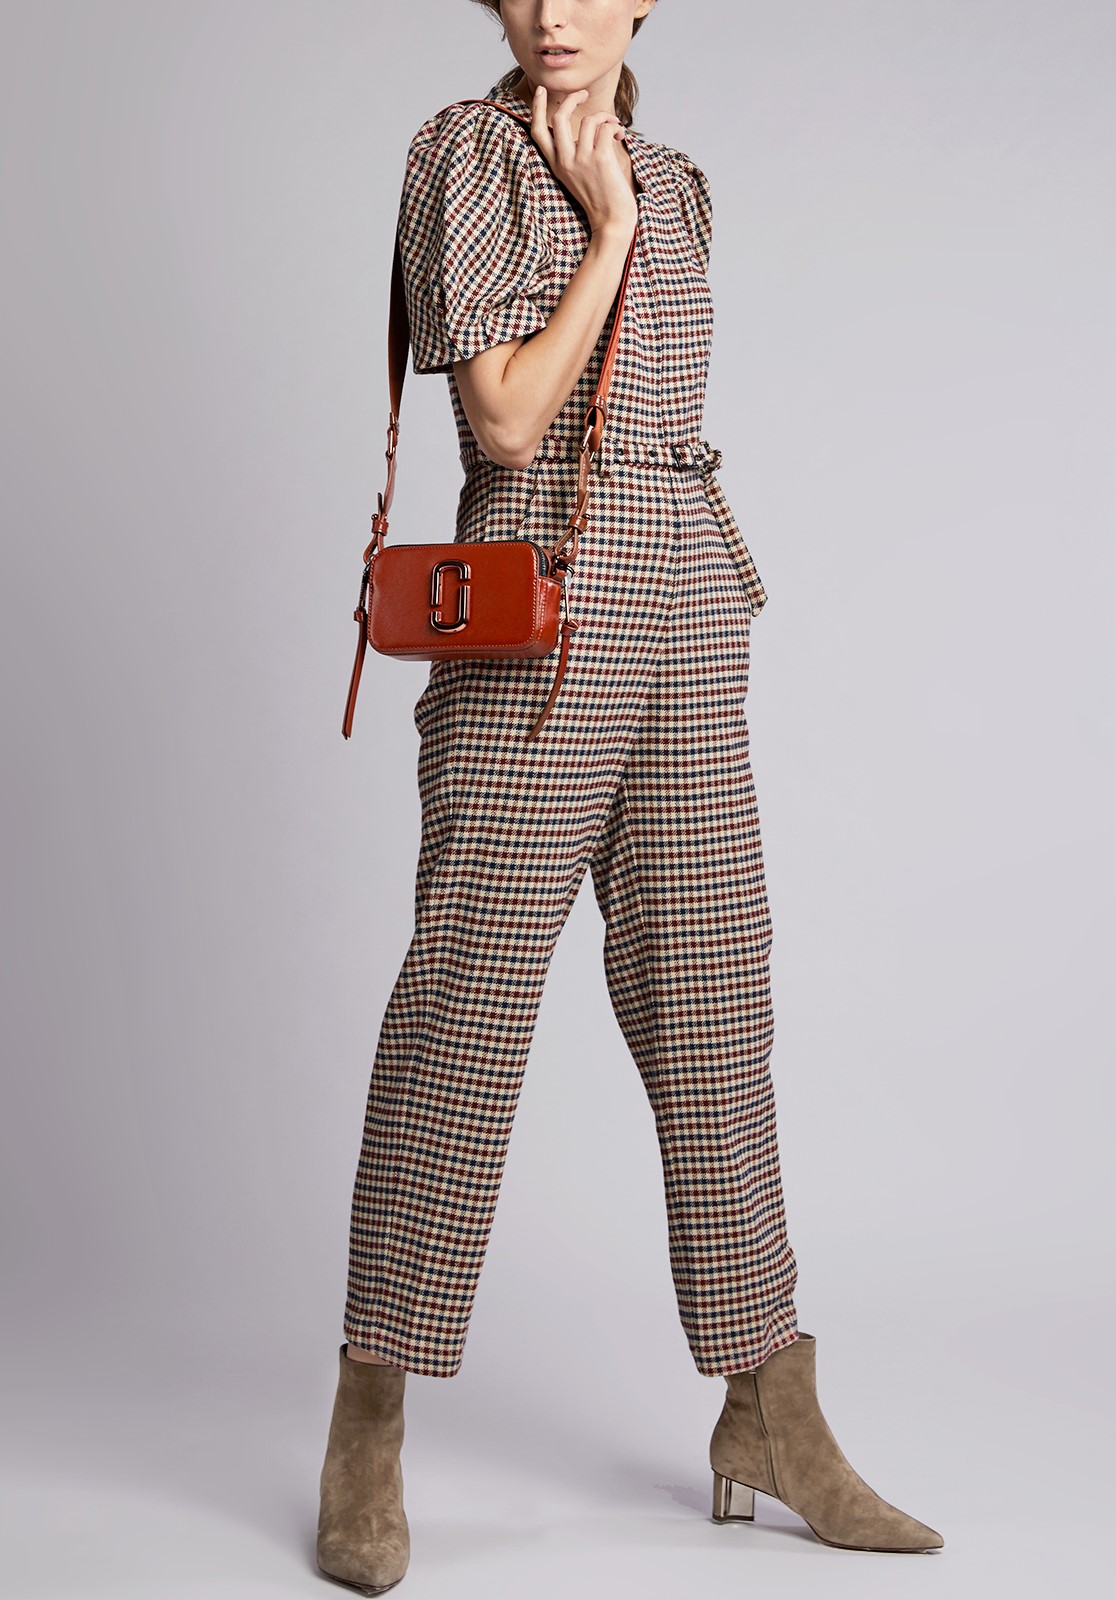 Túi đeo chéo nữ Marc Jacobs màu cam nâu The Snapshot Monochrome Leather Camera Bag 2